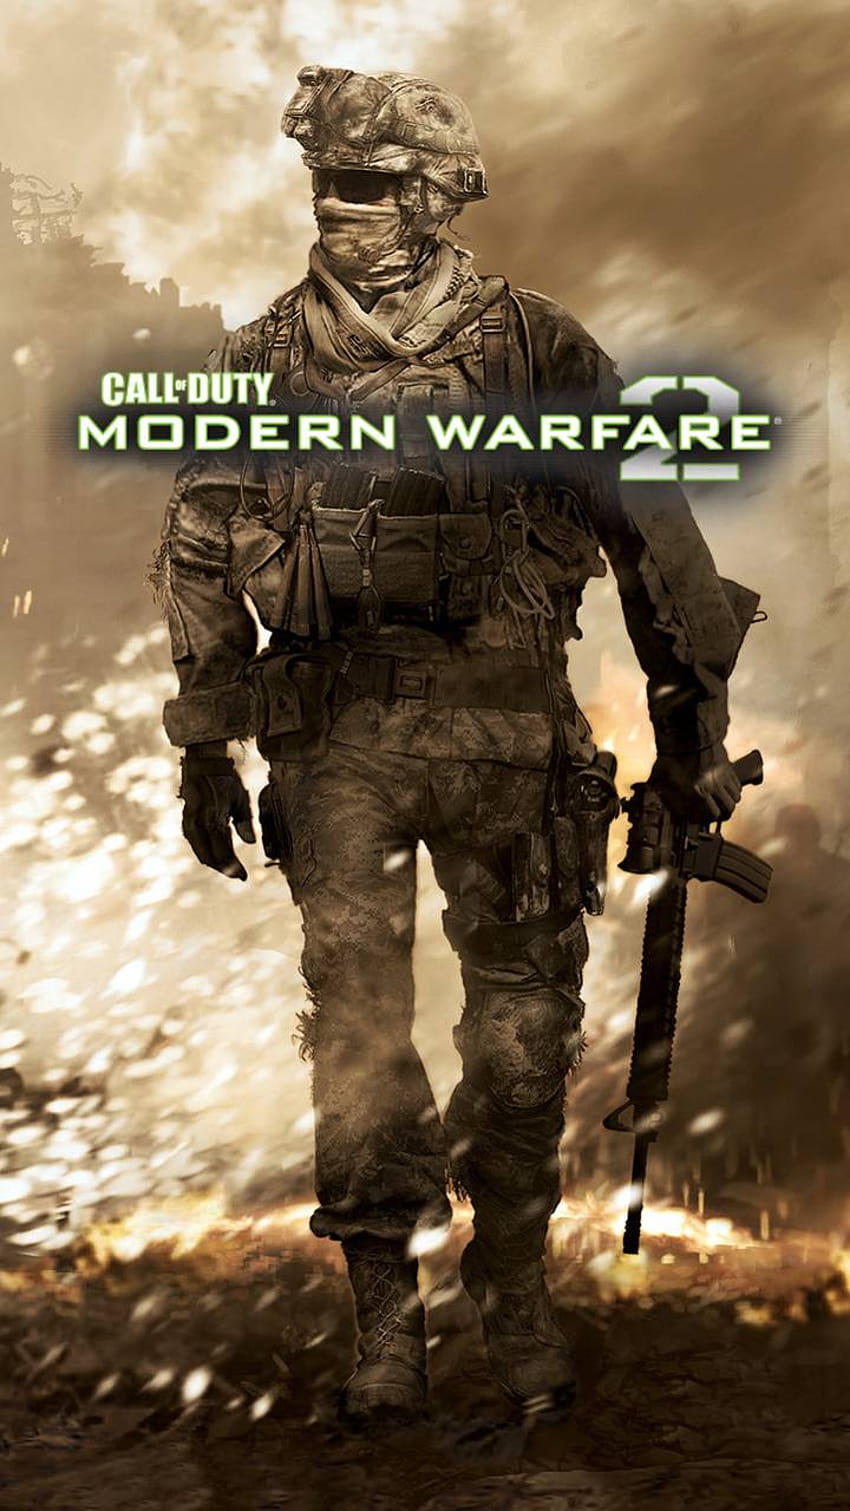 Call of duty modern warfare 2 1080P 2K 4K 5K HD wallpapers free download   Wallpaper Flare